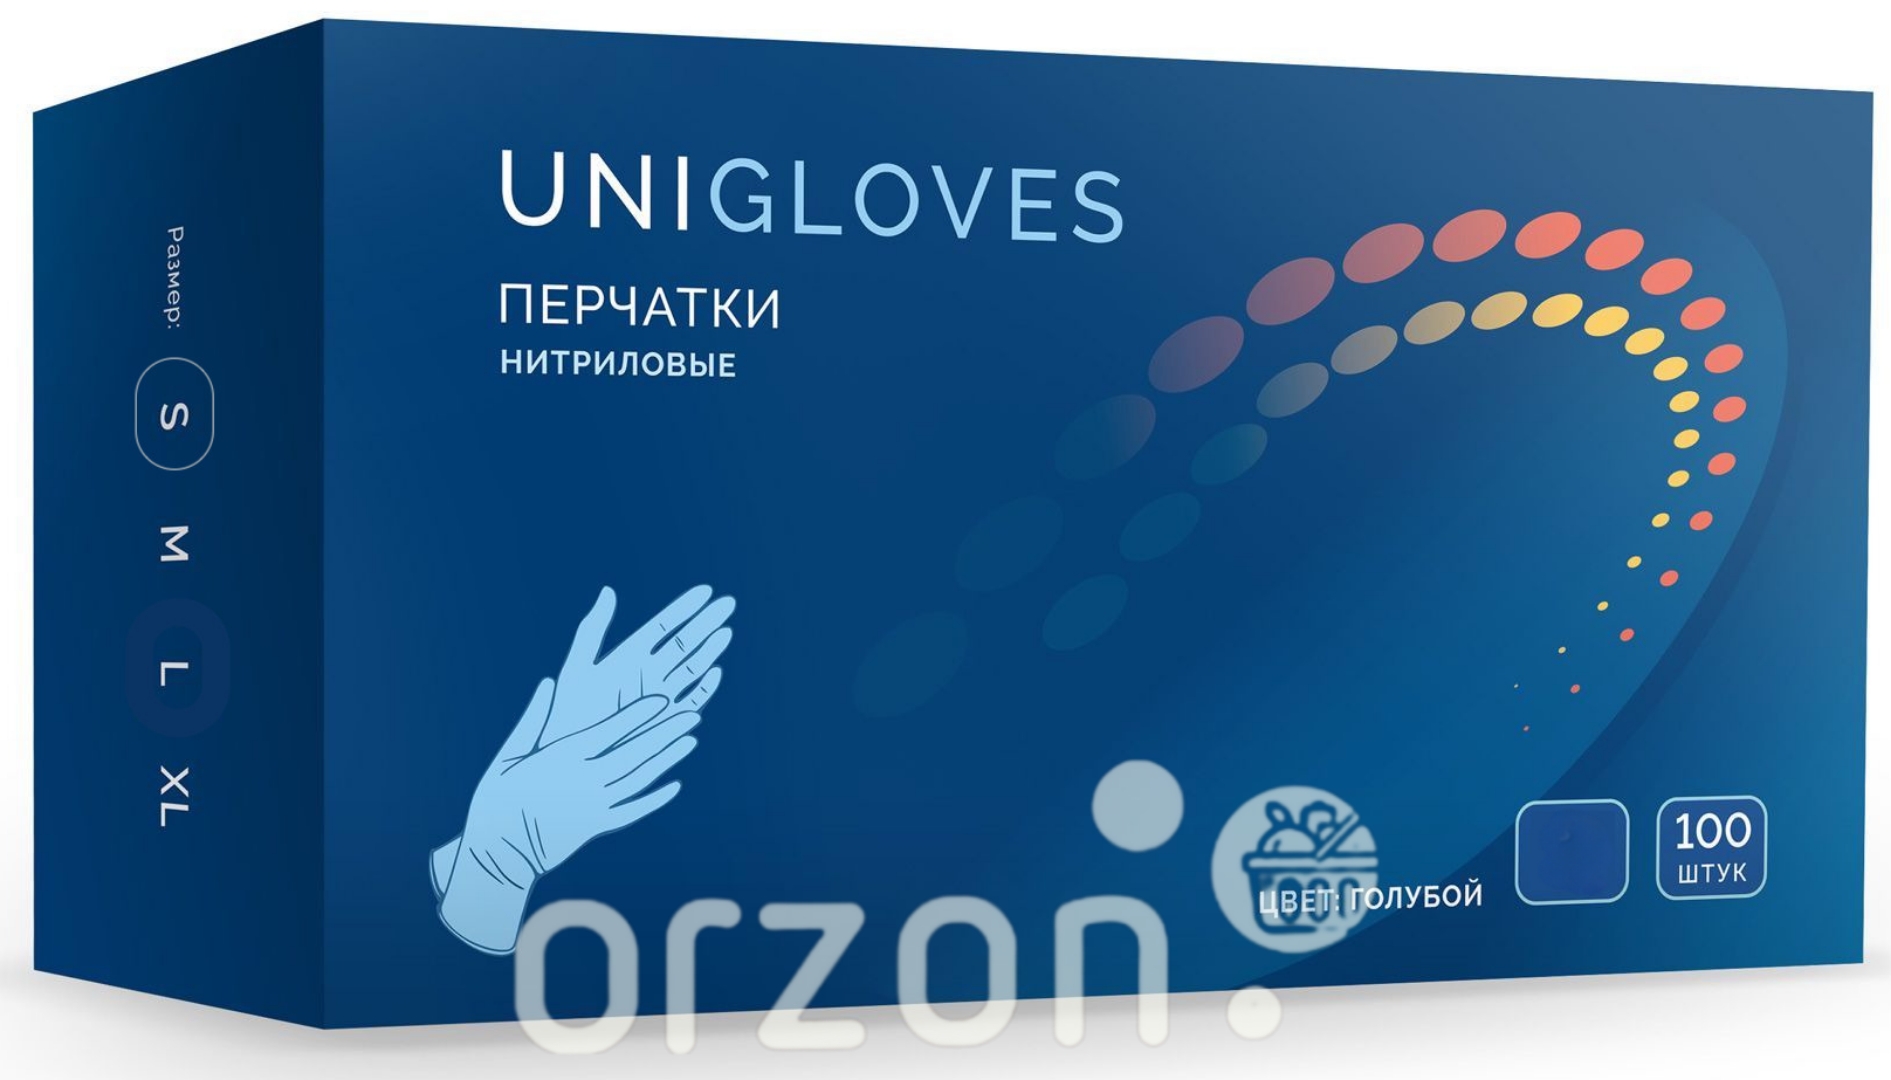 Перчатки одноразовые "UniGloves" Нитриловые  Синие (L) 100 dona